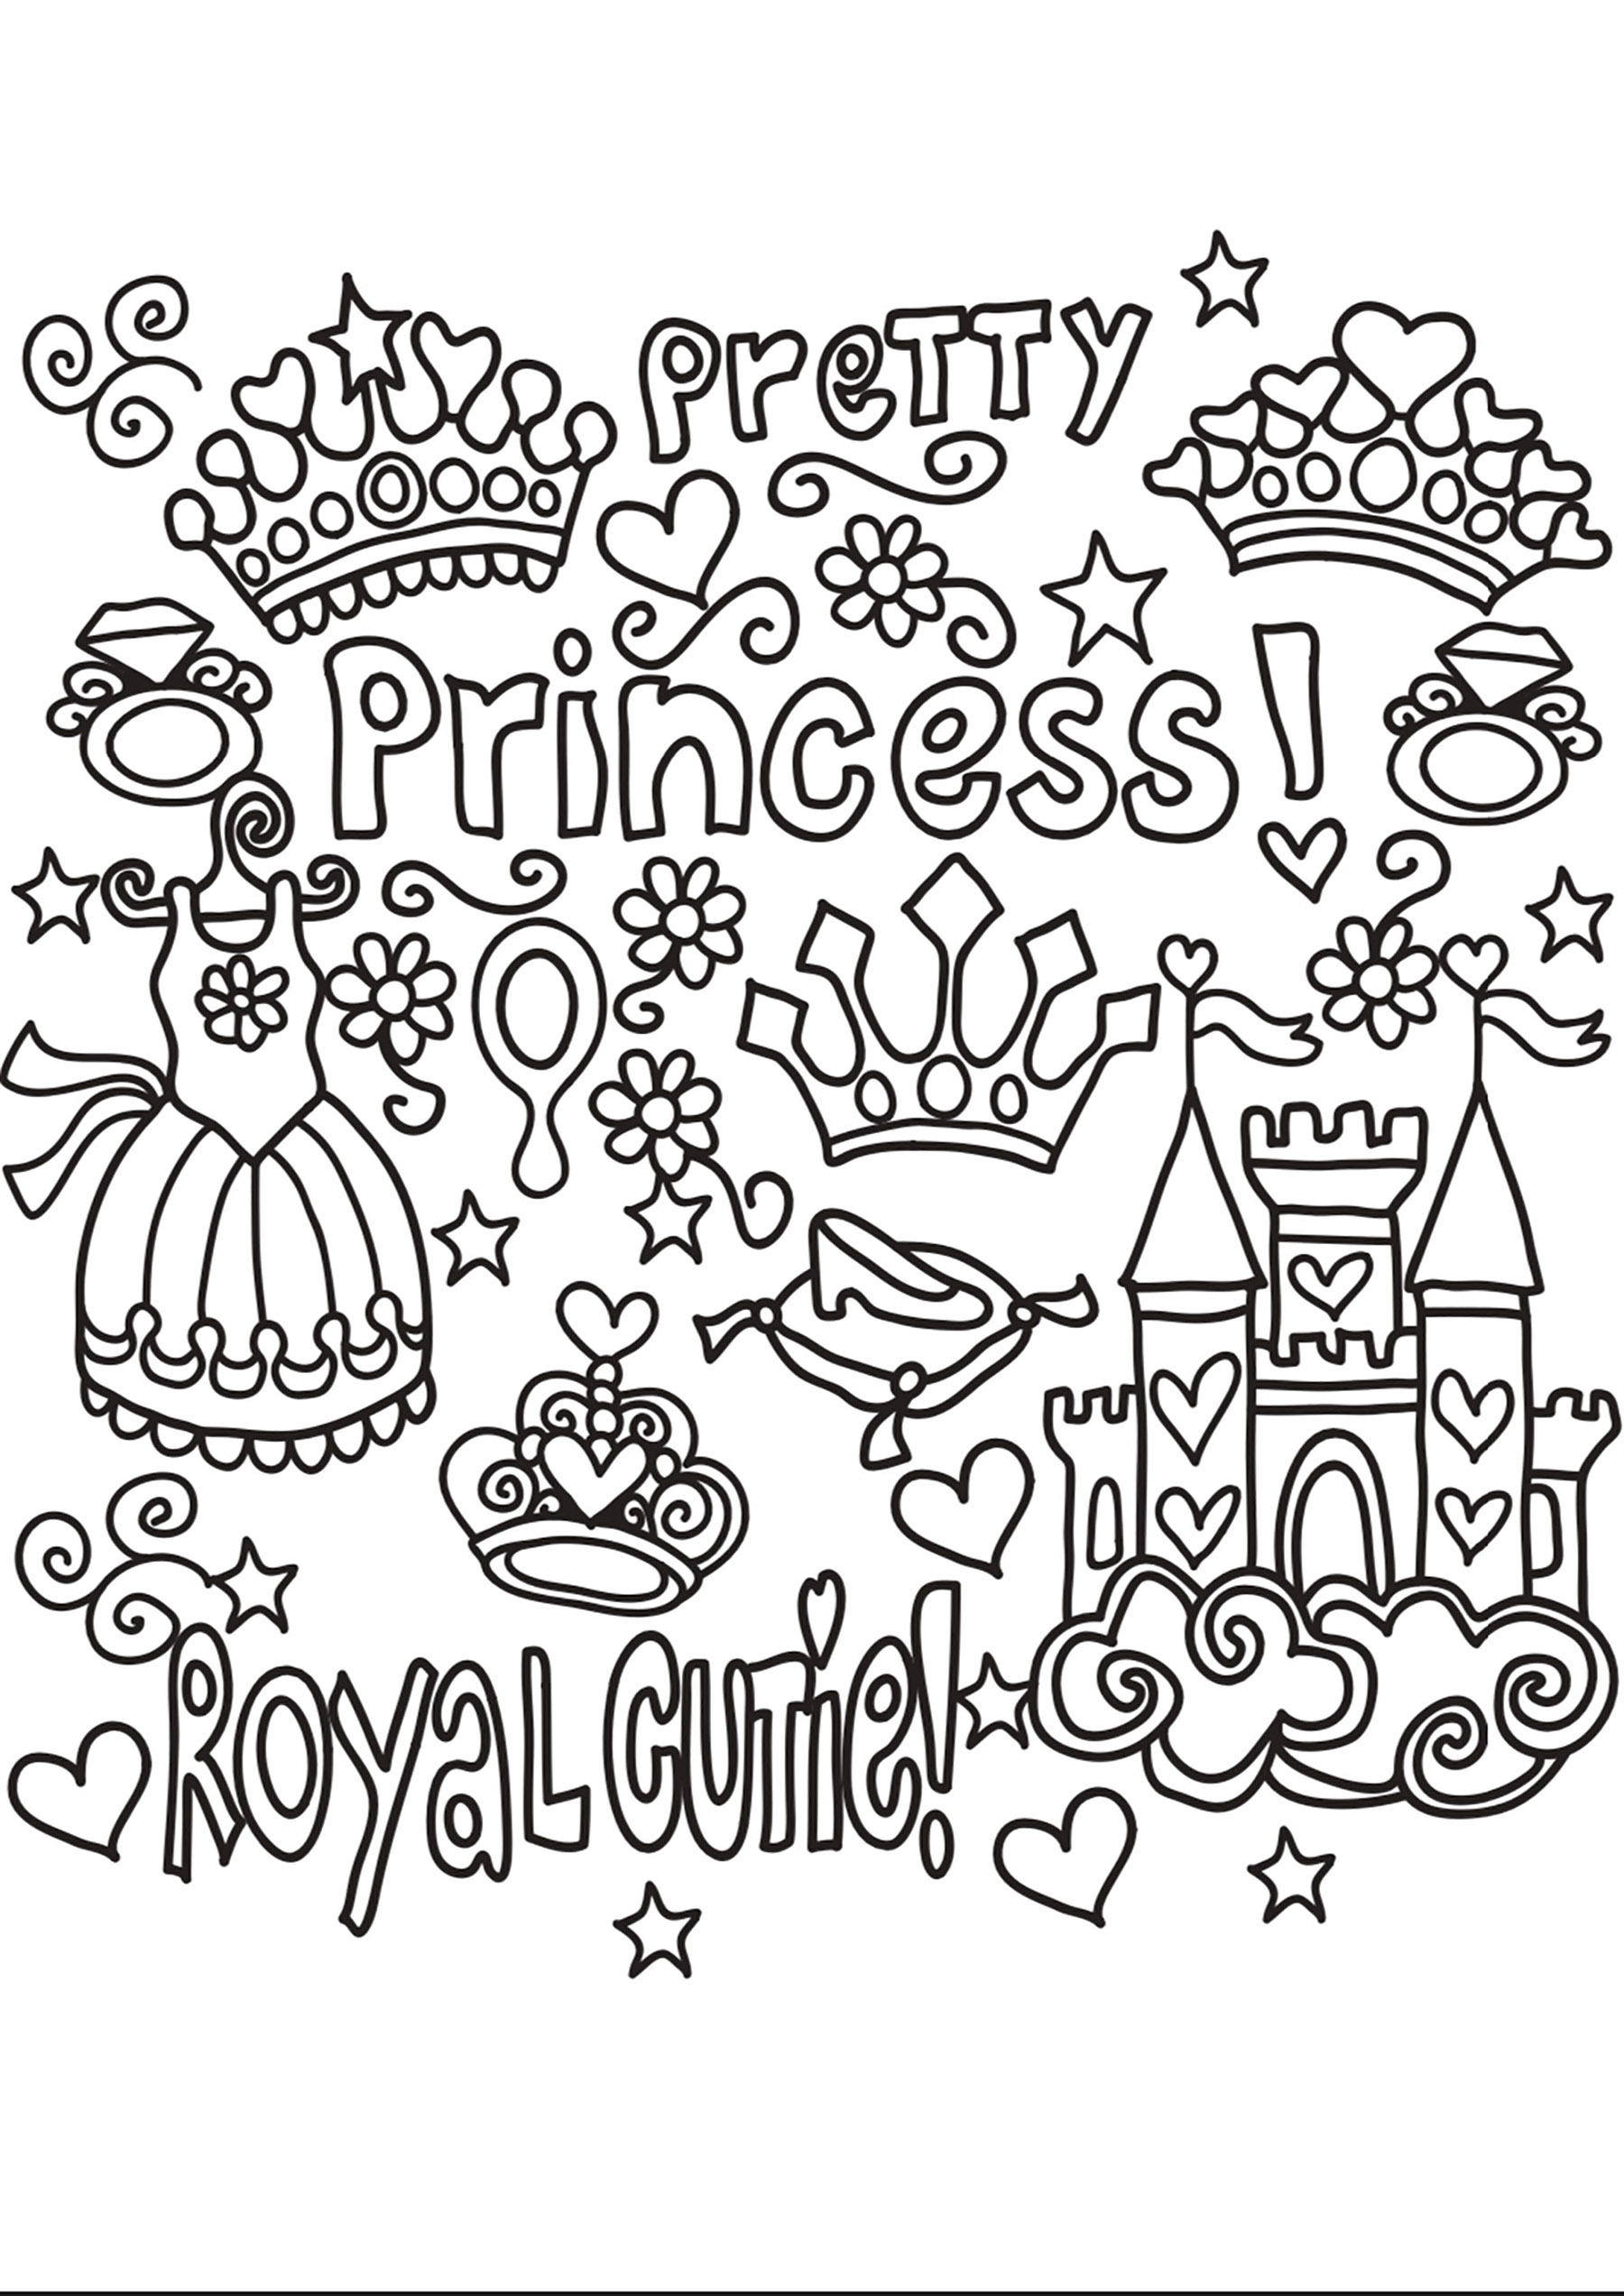 Doodle Princesse. Numerosos objectos e textos relativos às Princesas: castelo, vestido, coroa, etc.